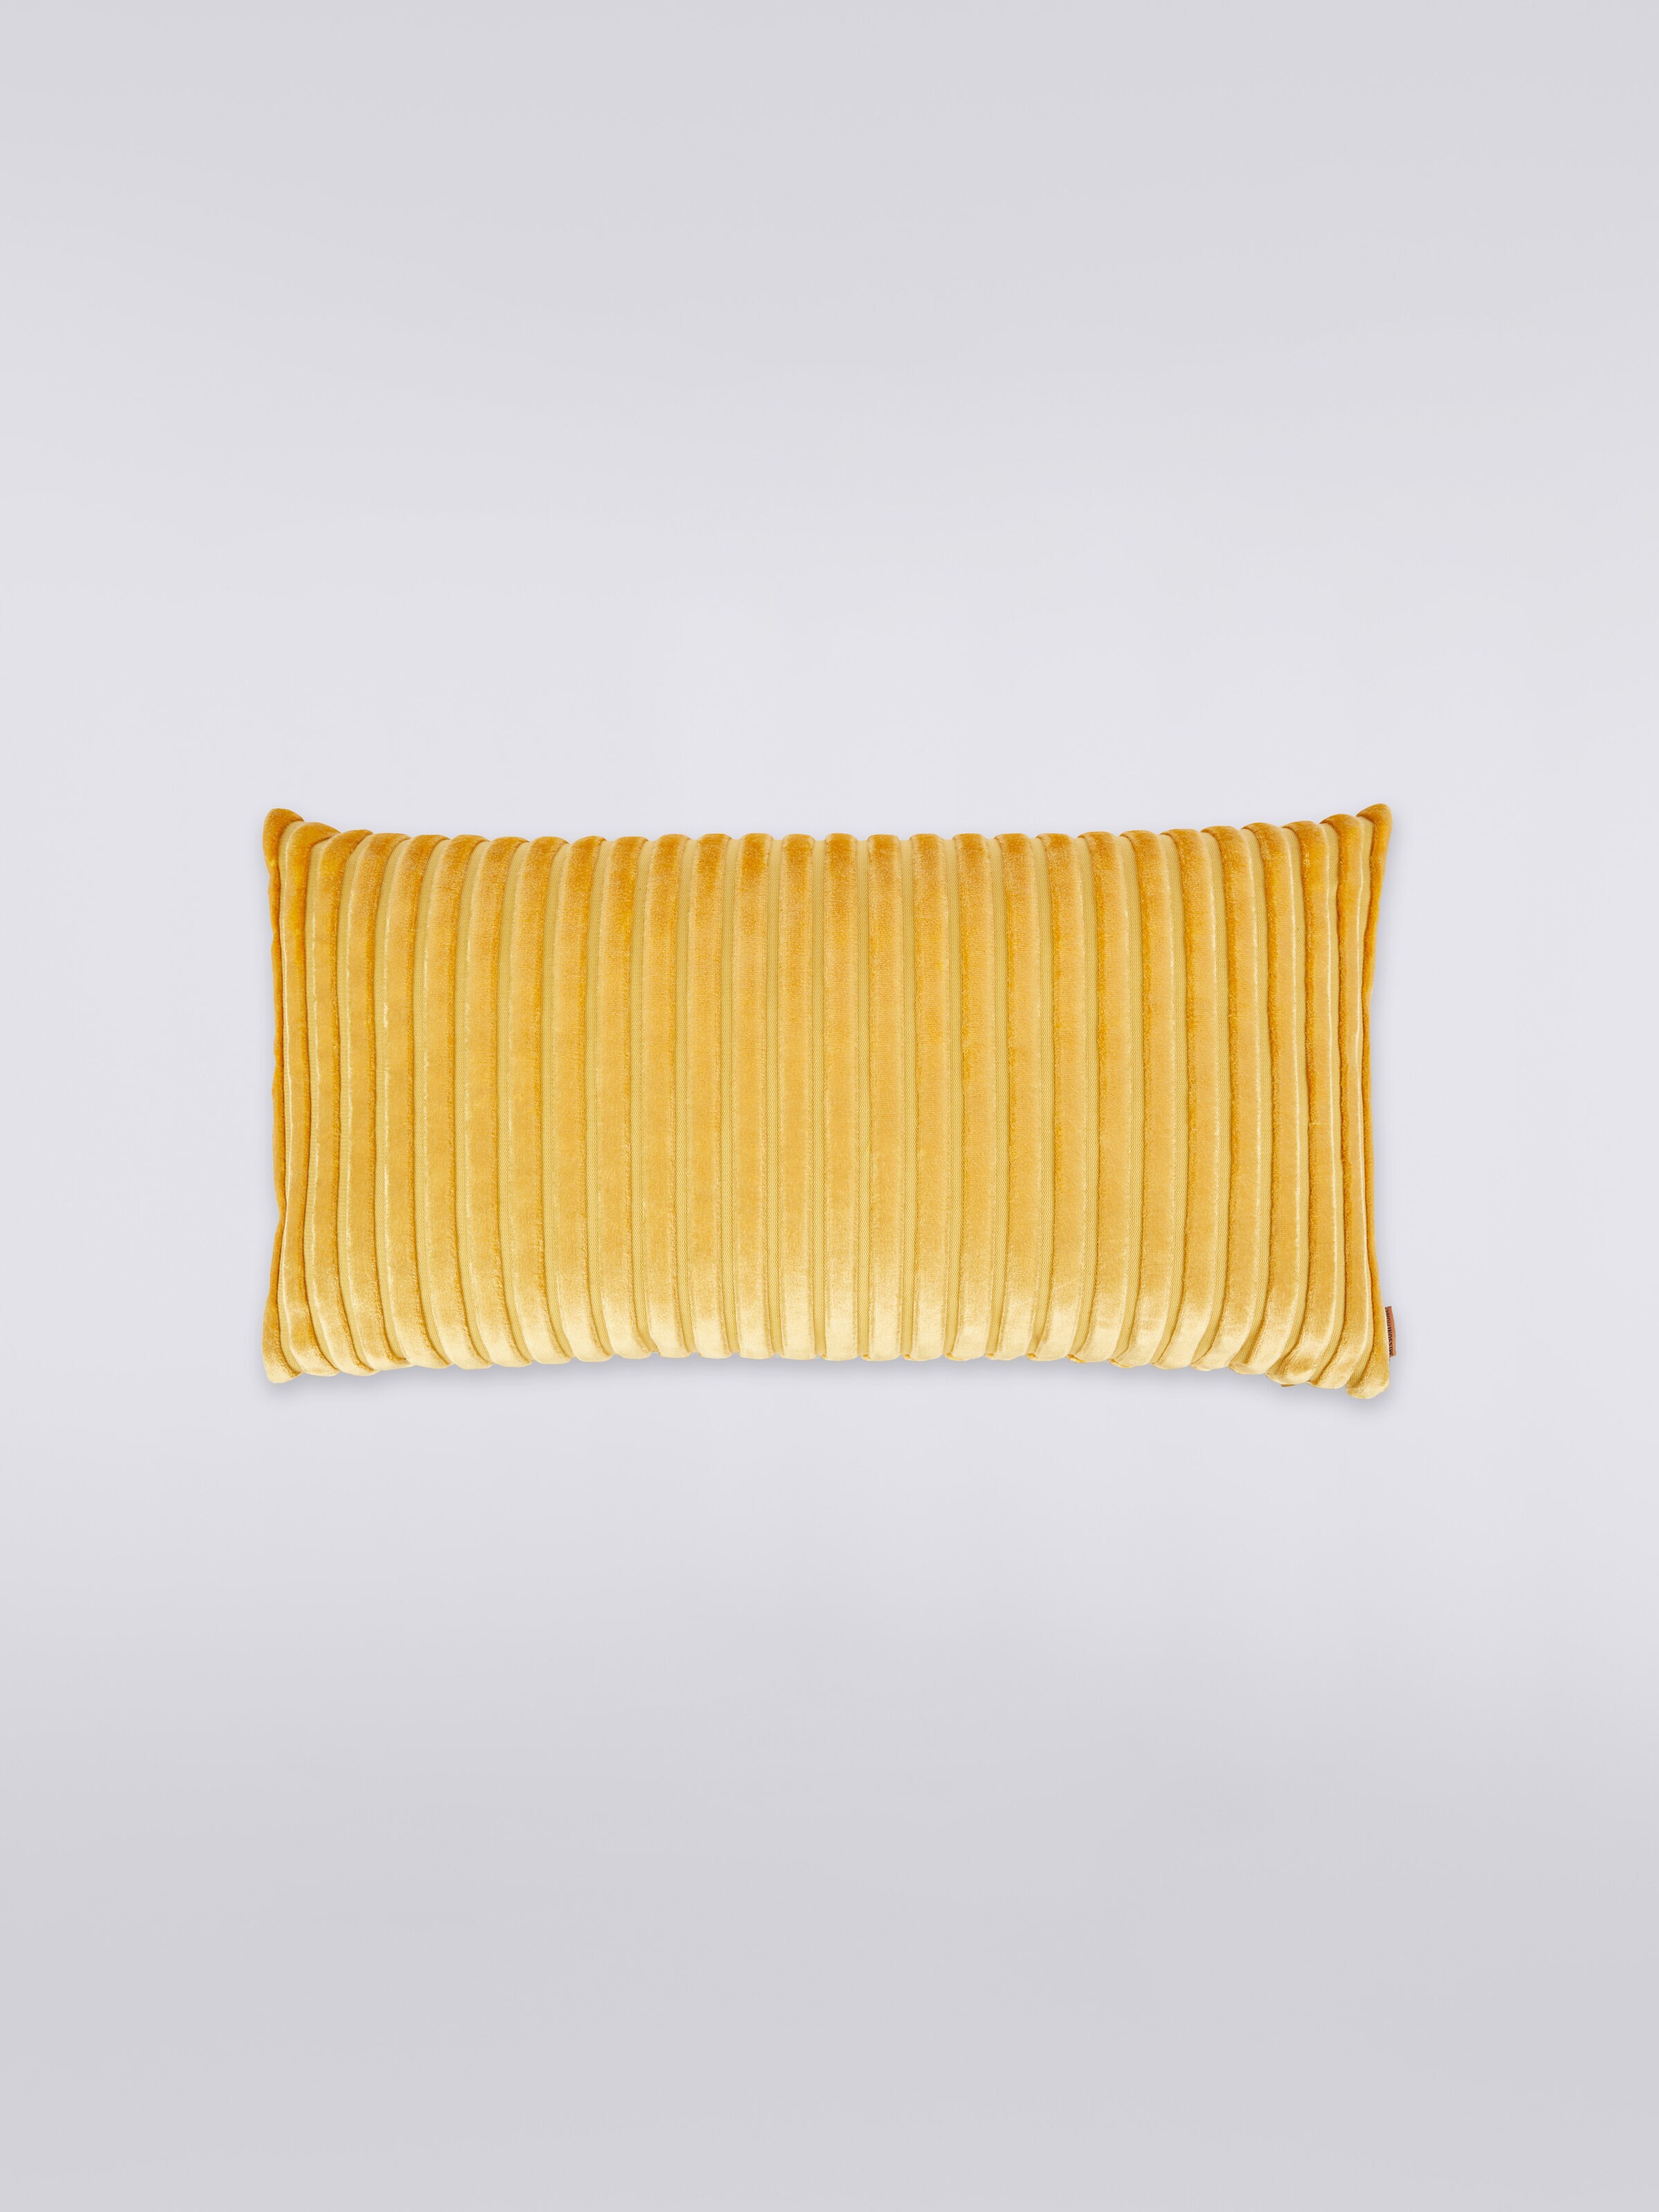 Coomba Cushion 30X60, Gold - 0